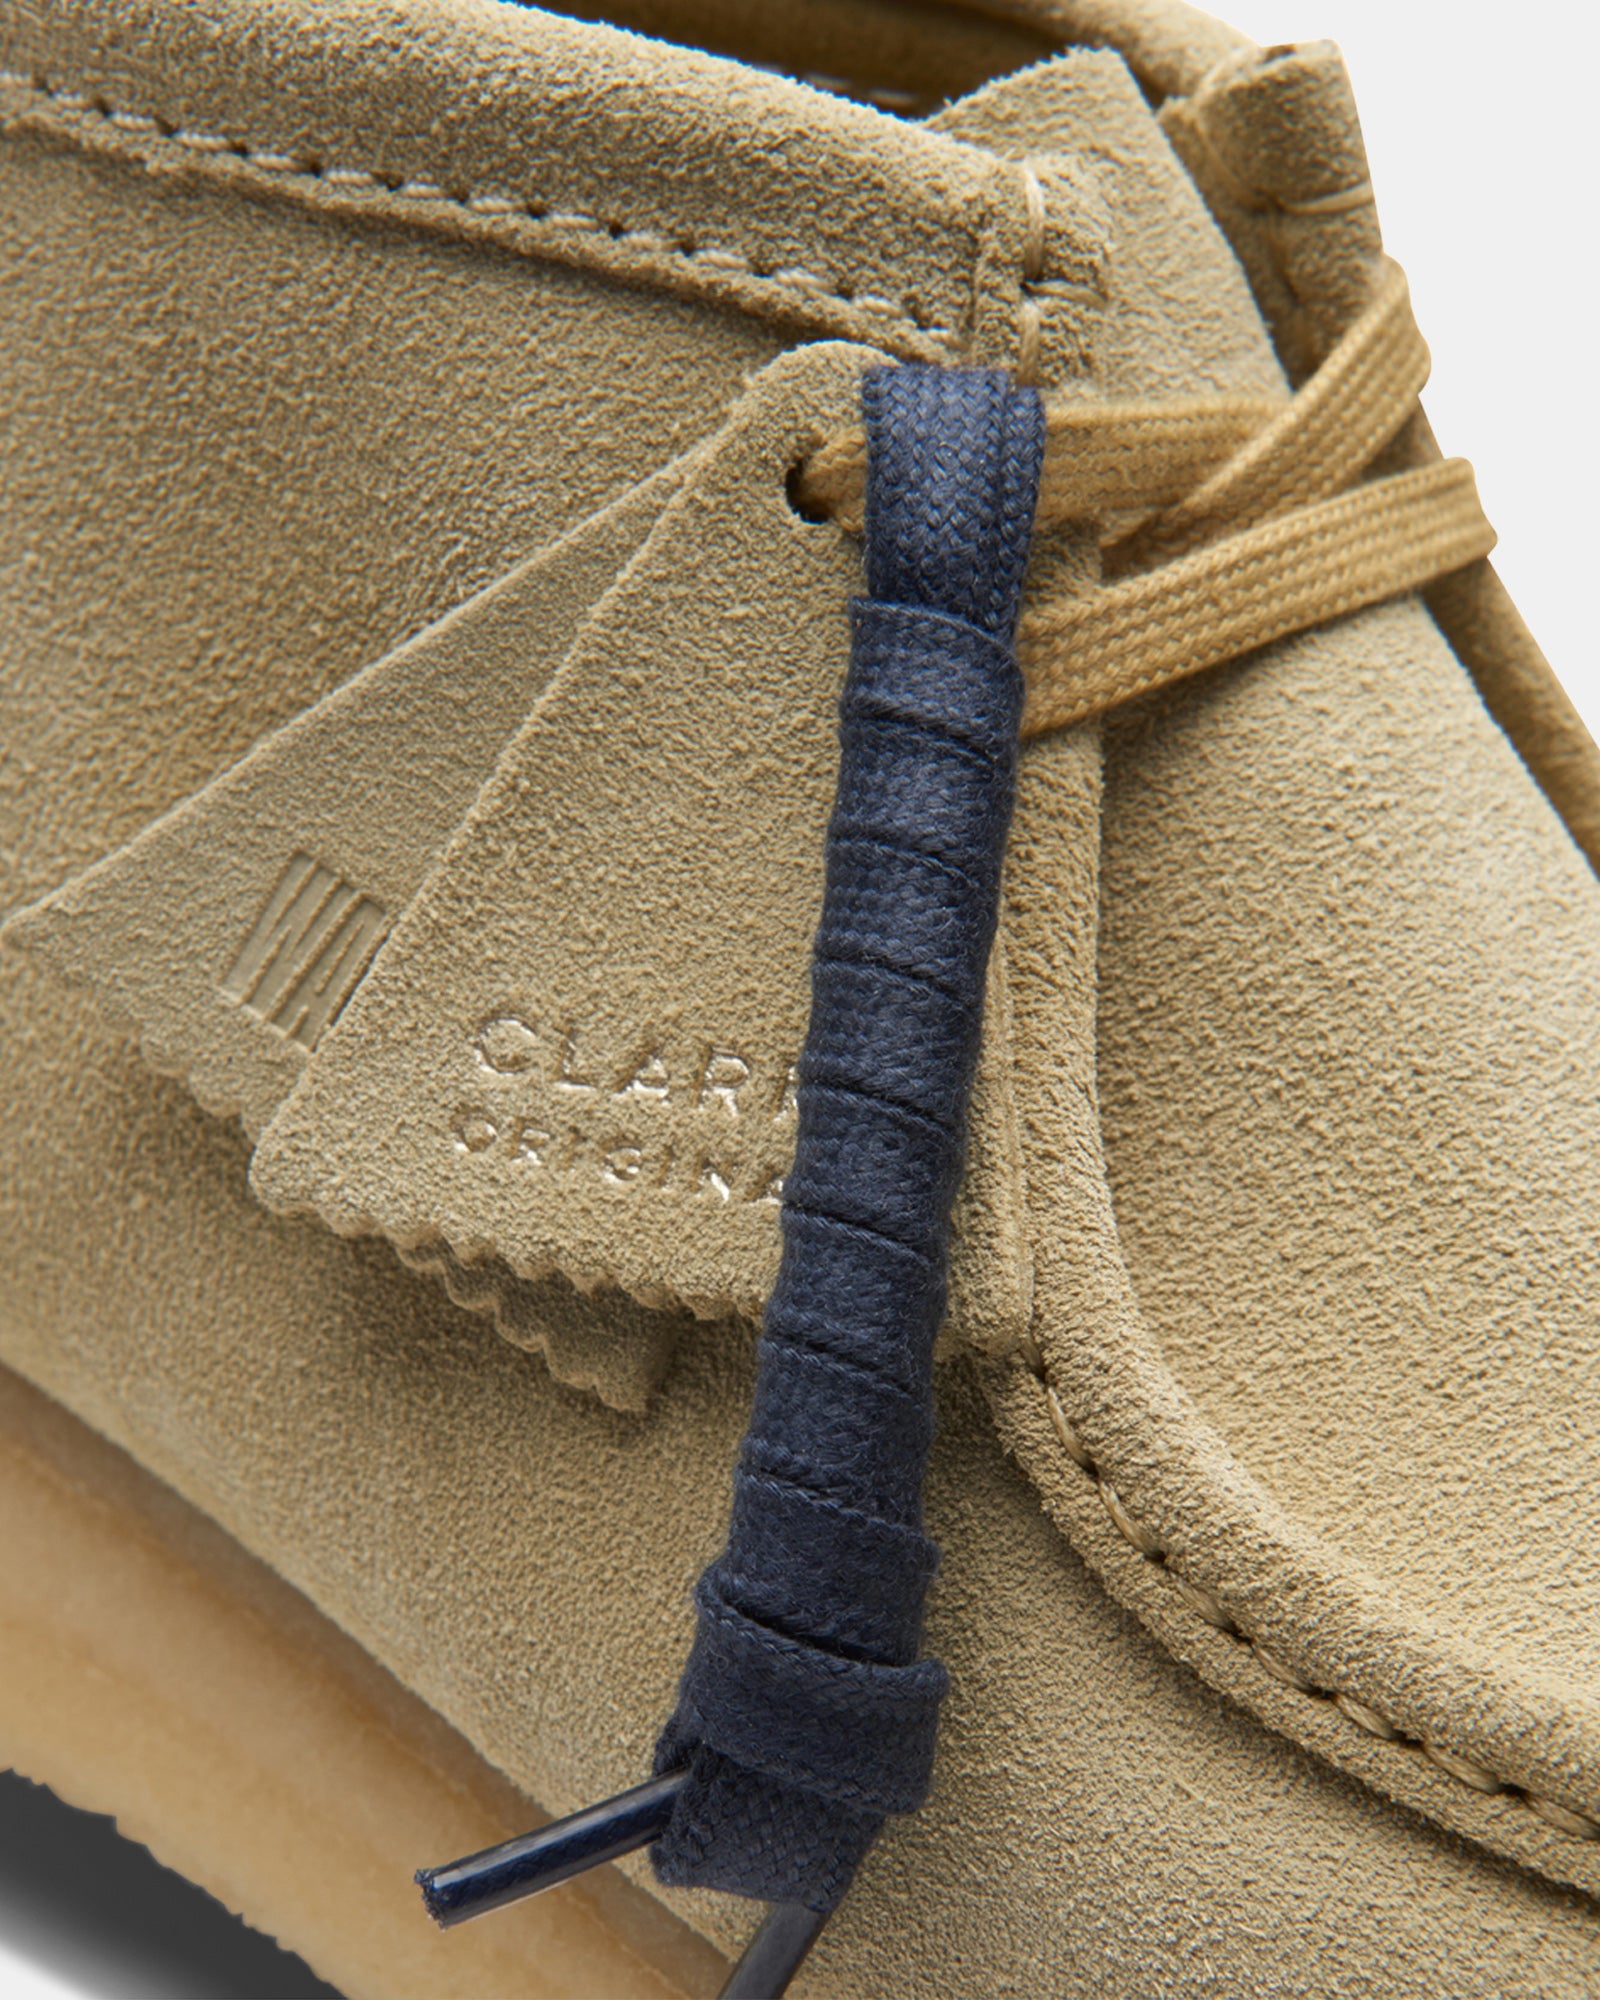 【安価】【Clarks】WALLABEE BOOT MAPLE SUEDE 靴